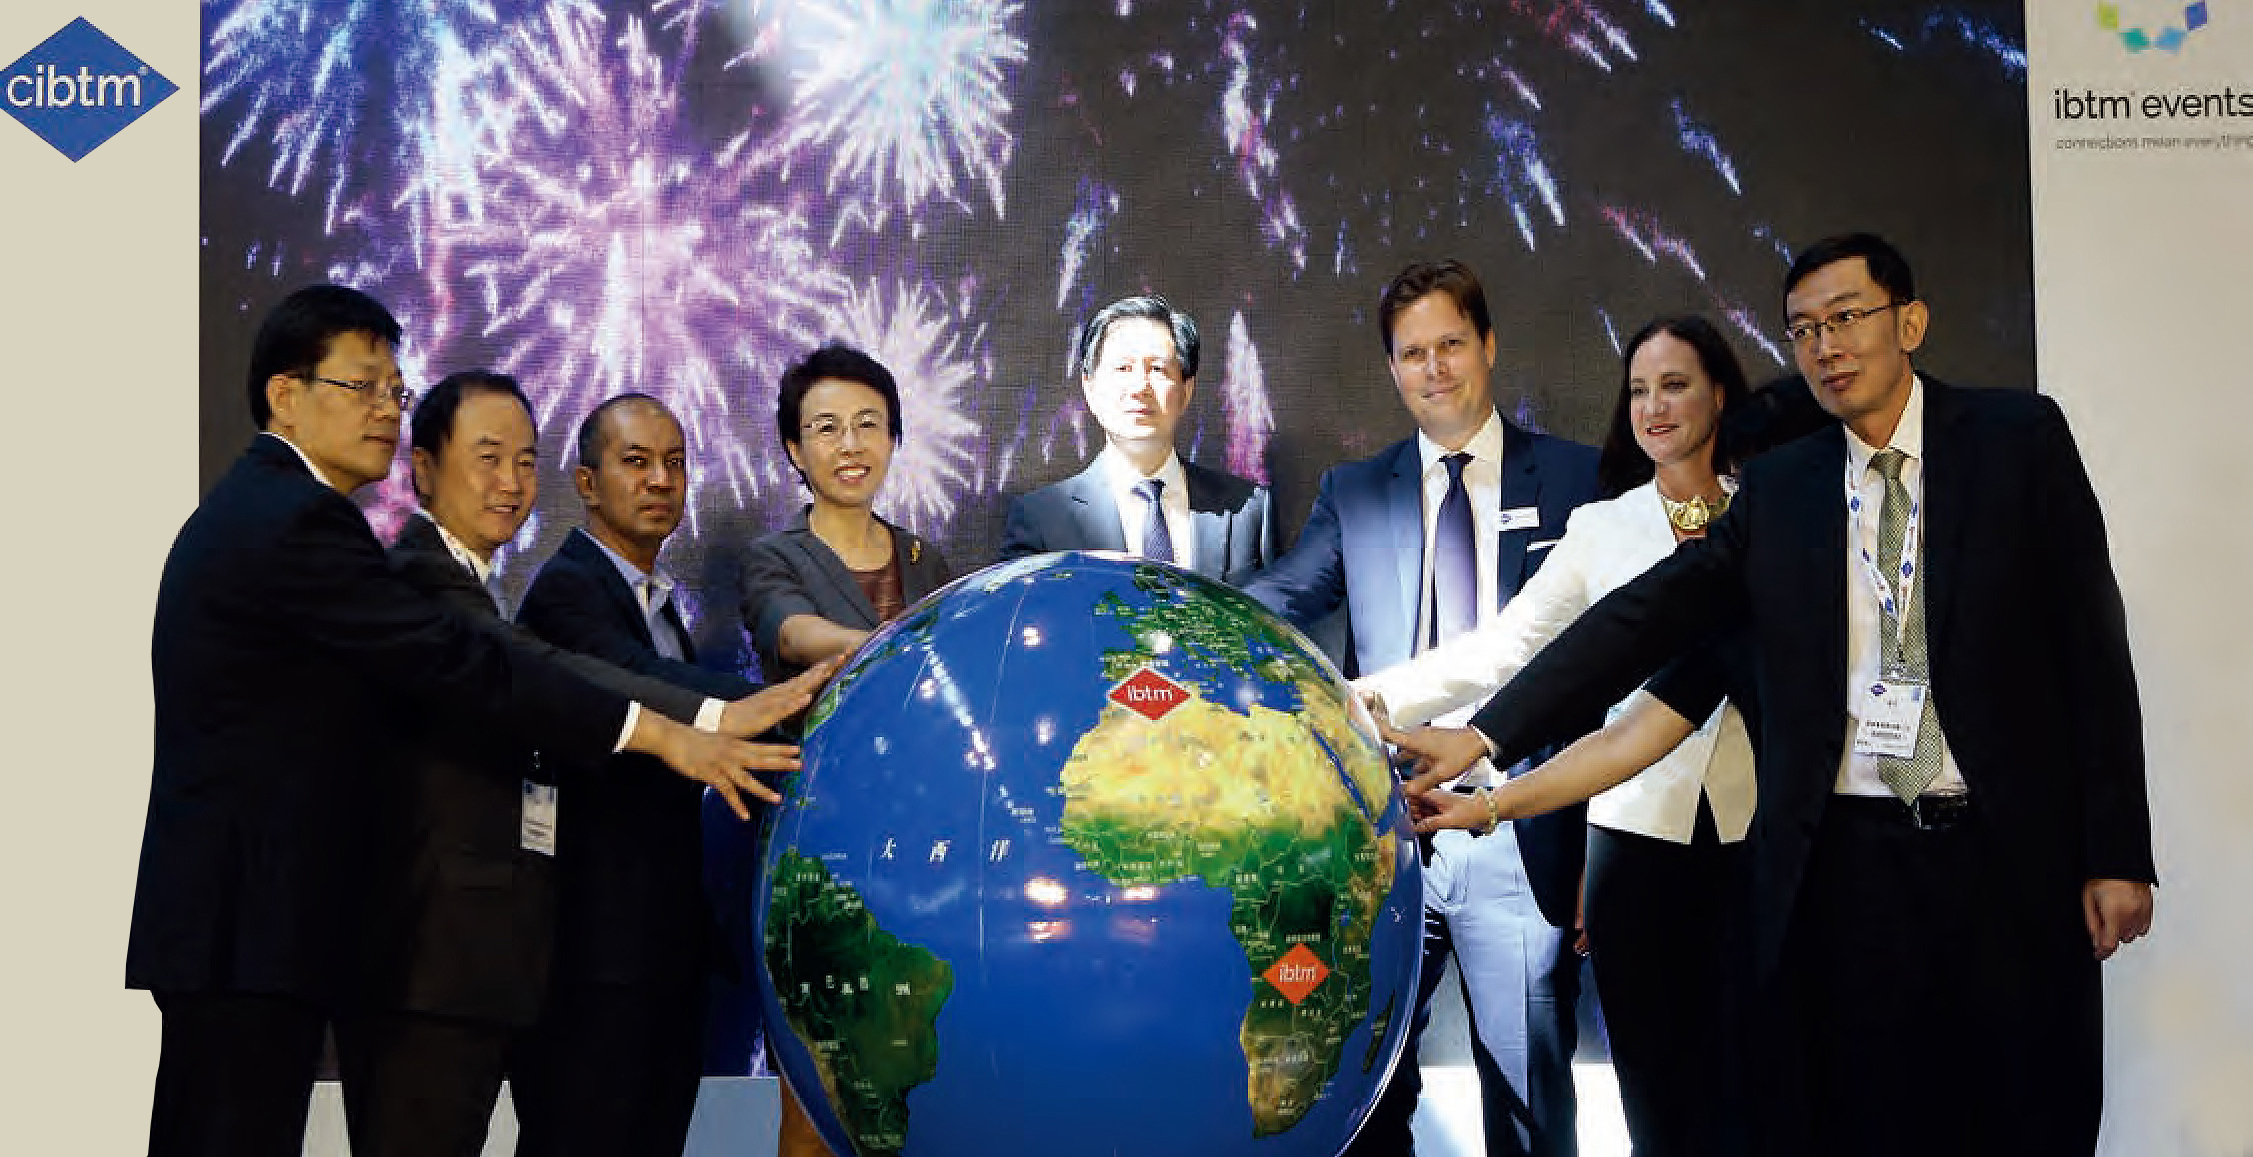 北京国际商务及会奖旅游展览会国际影响力日渐扩大